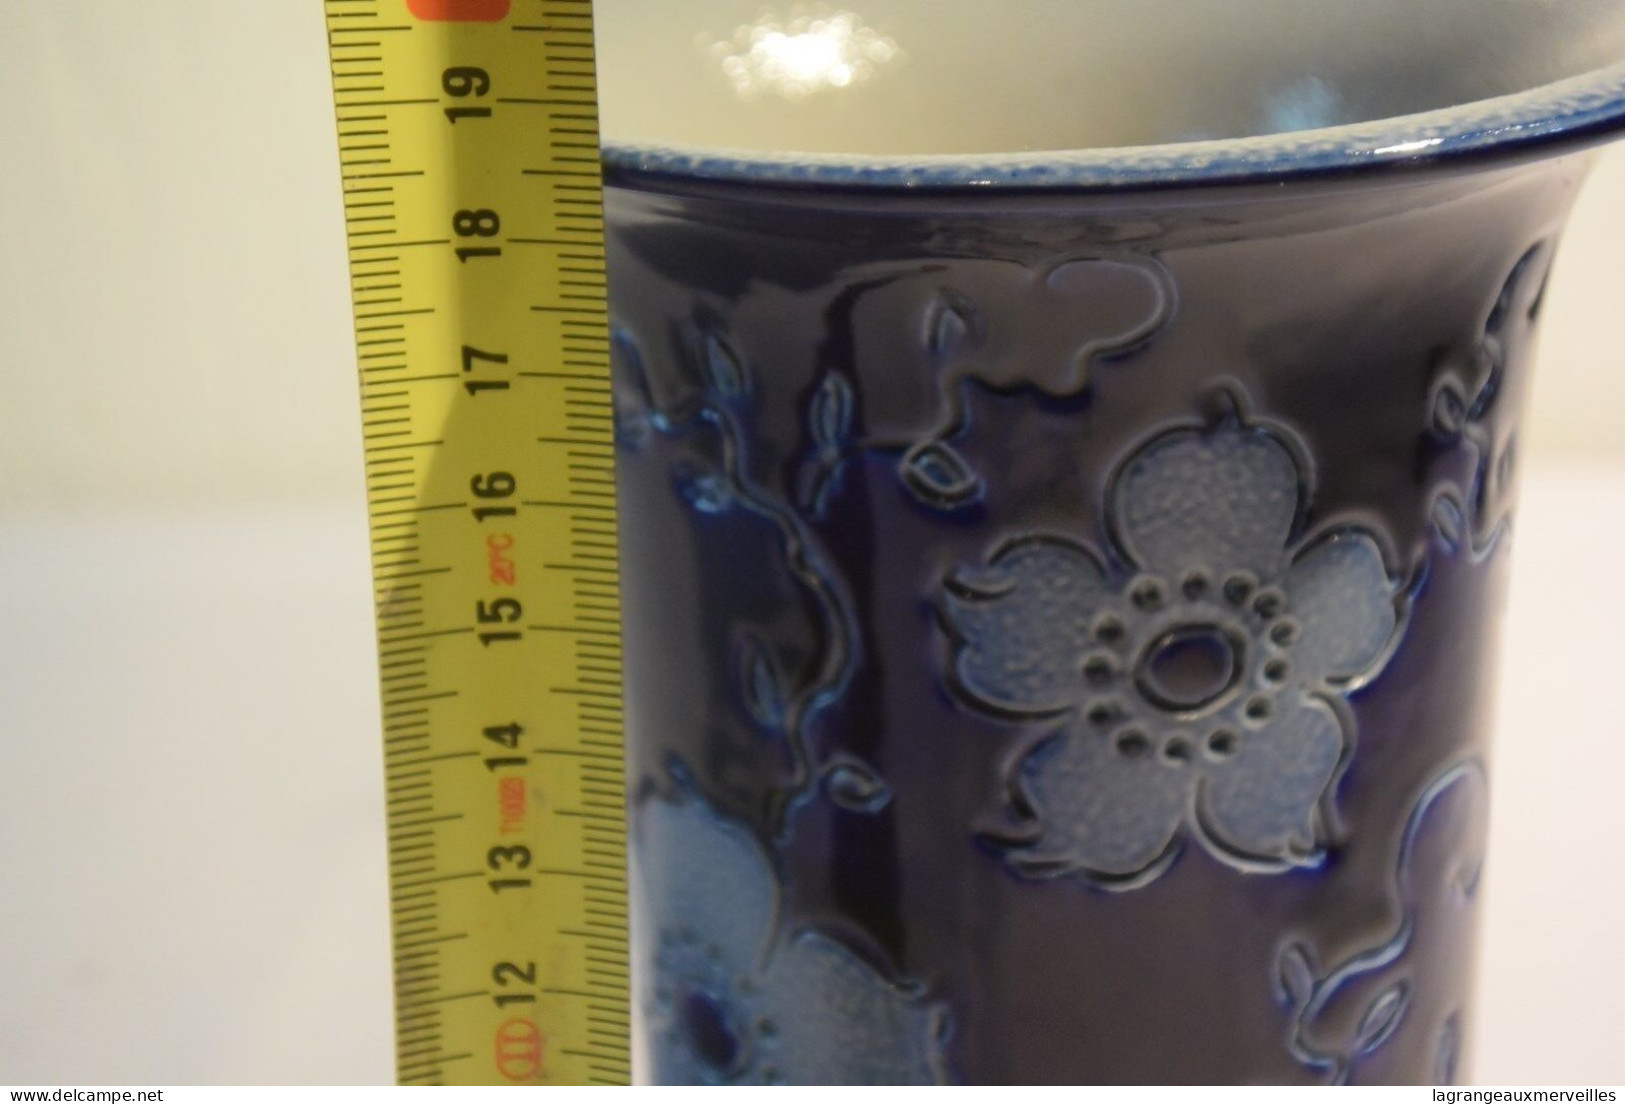 C59 Magnifique Vase Soliflore En Faïence Décorée SIGNE' - Vases